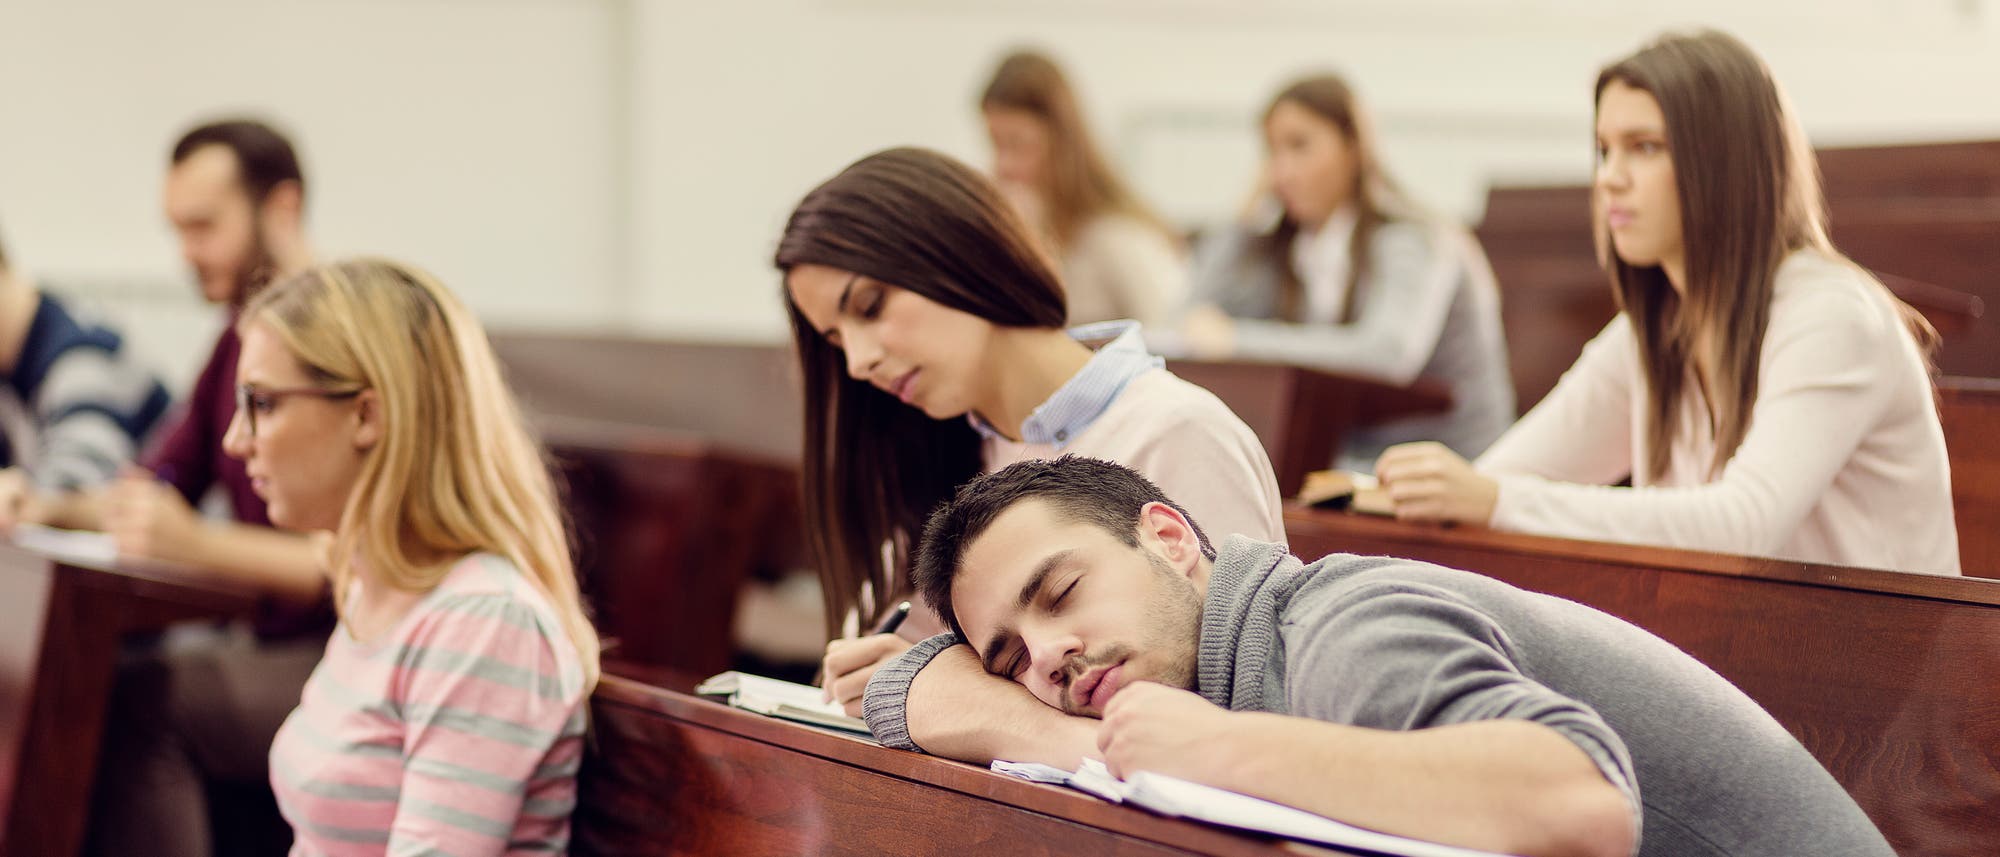 Student liegt schlafend in der Vorlesung